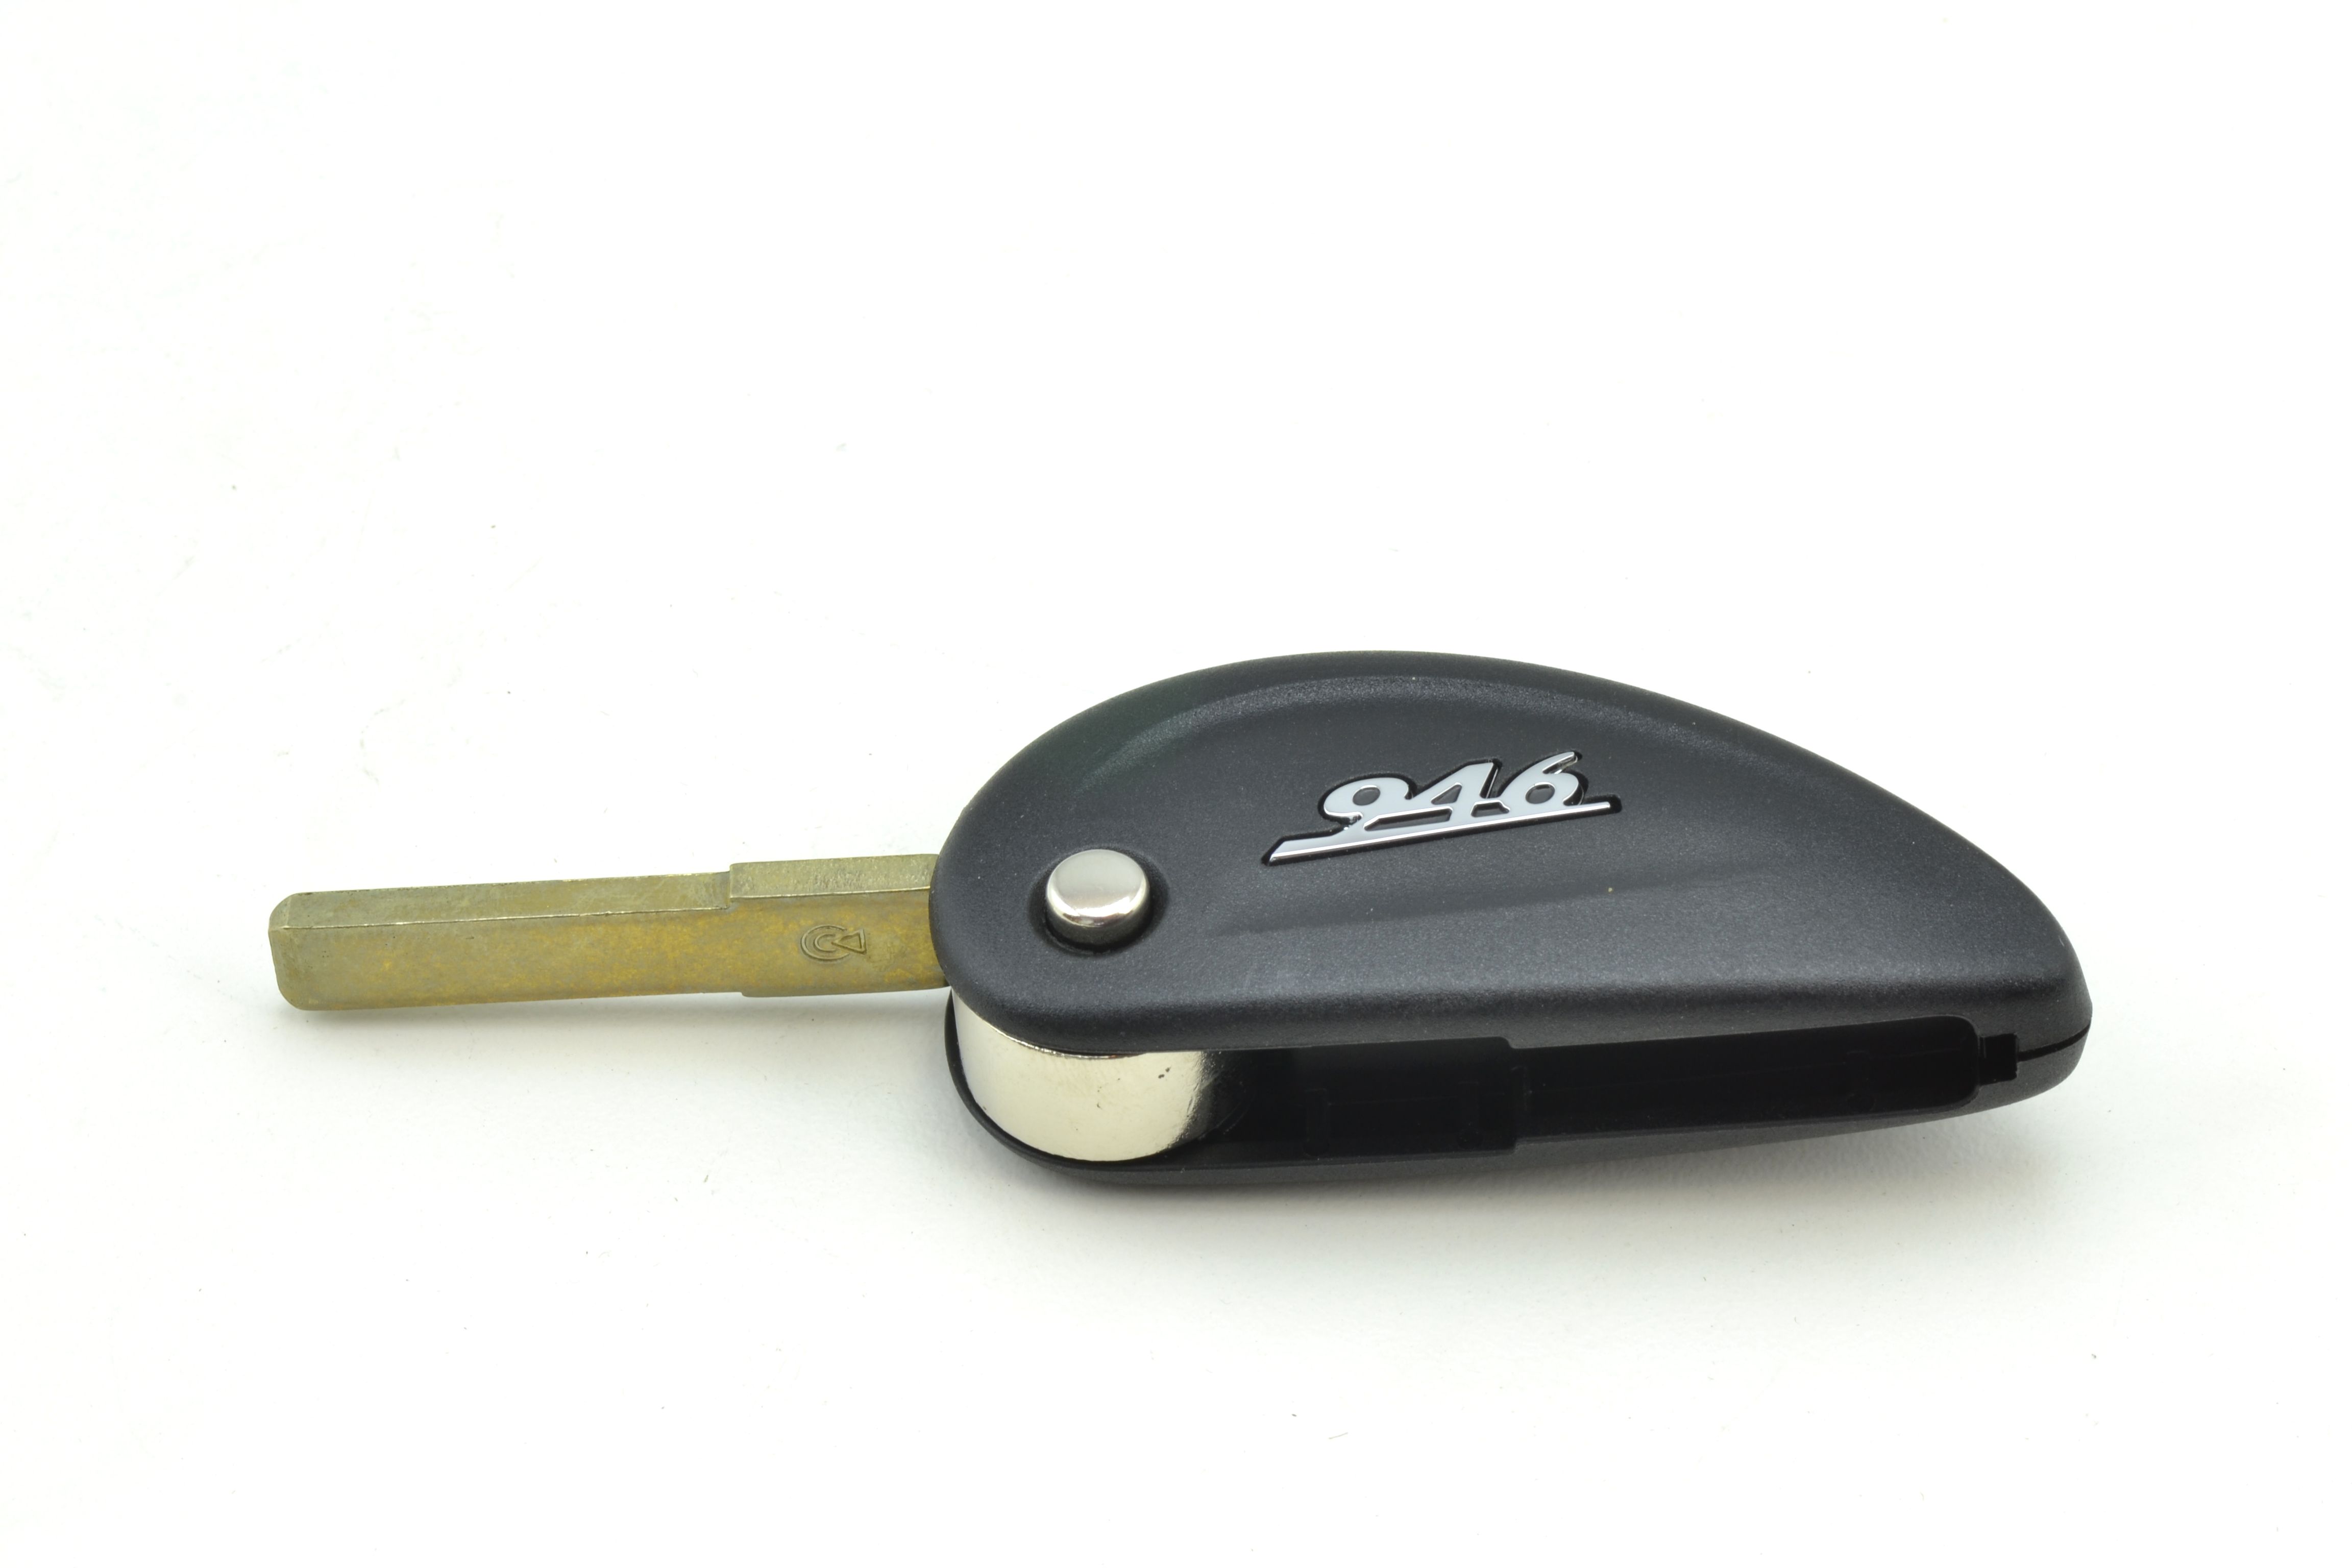 Piaggio Original Schlüsselrohling für Vespa 946